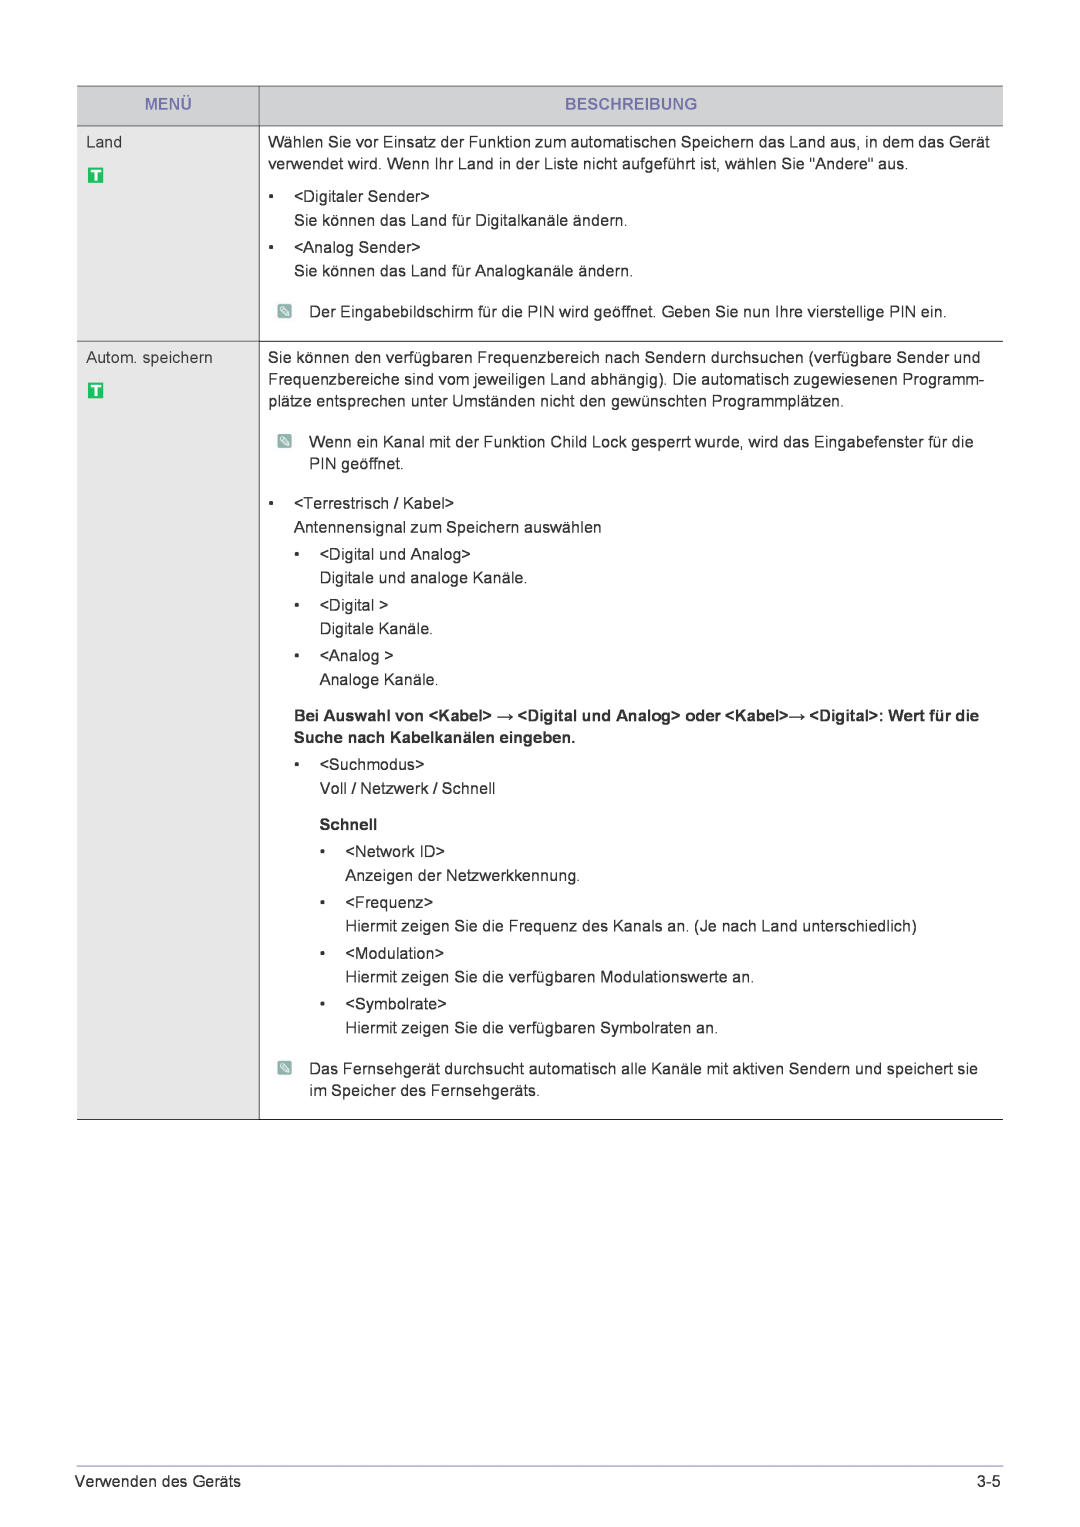 Samsung LS24EMLKF/EN manual Menü, Beschreibung, Suche nach Kabelkanälen eingeben, Schnell 